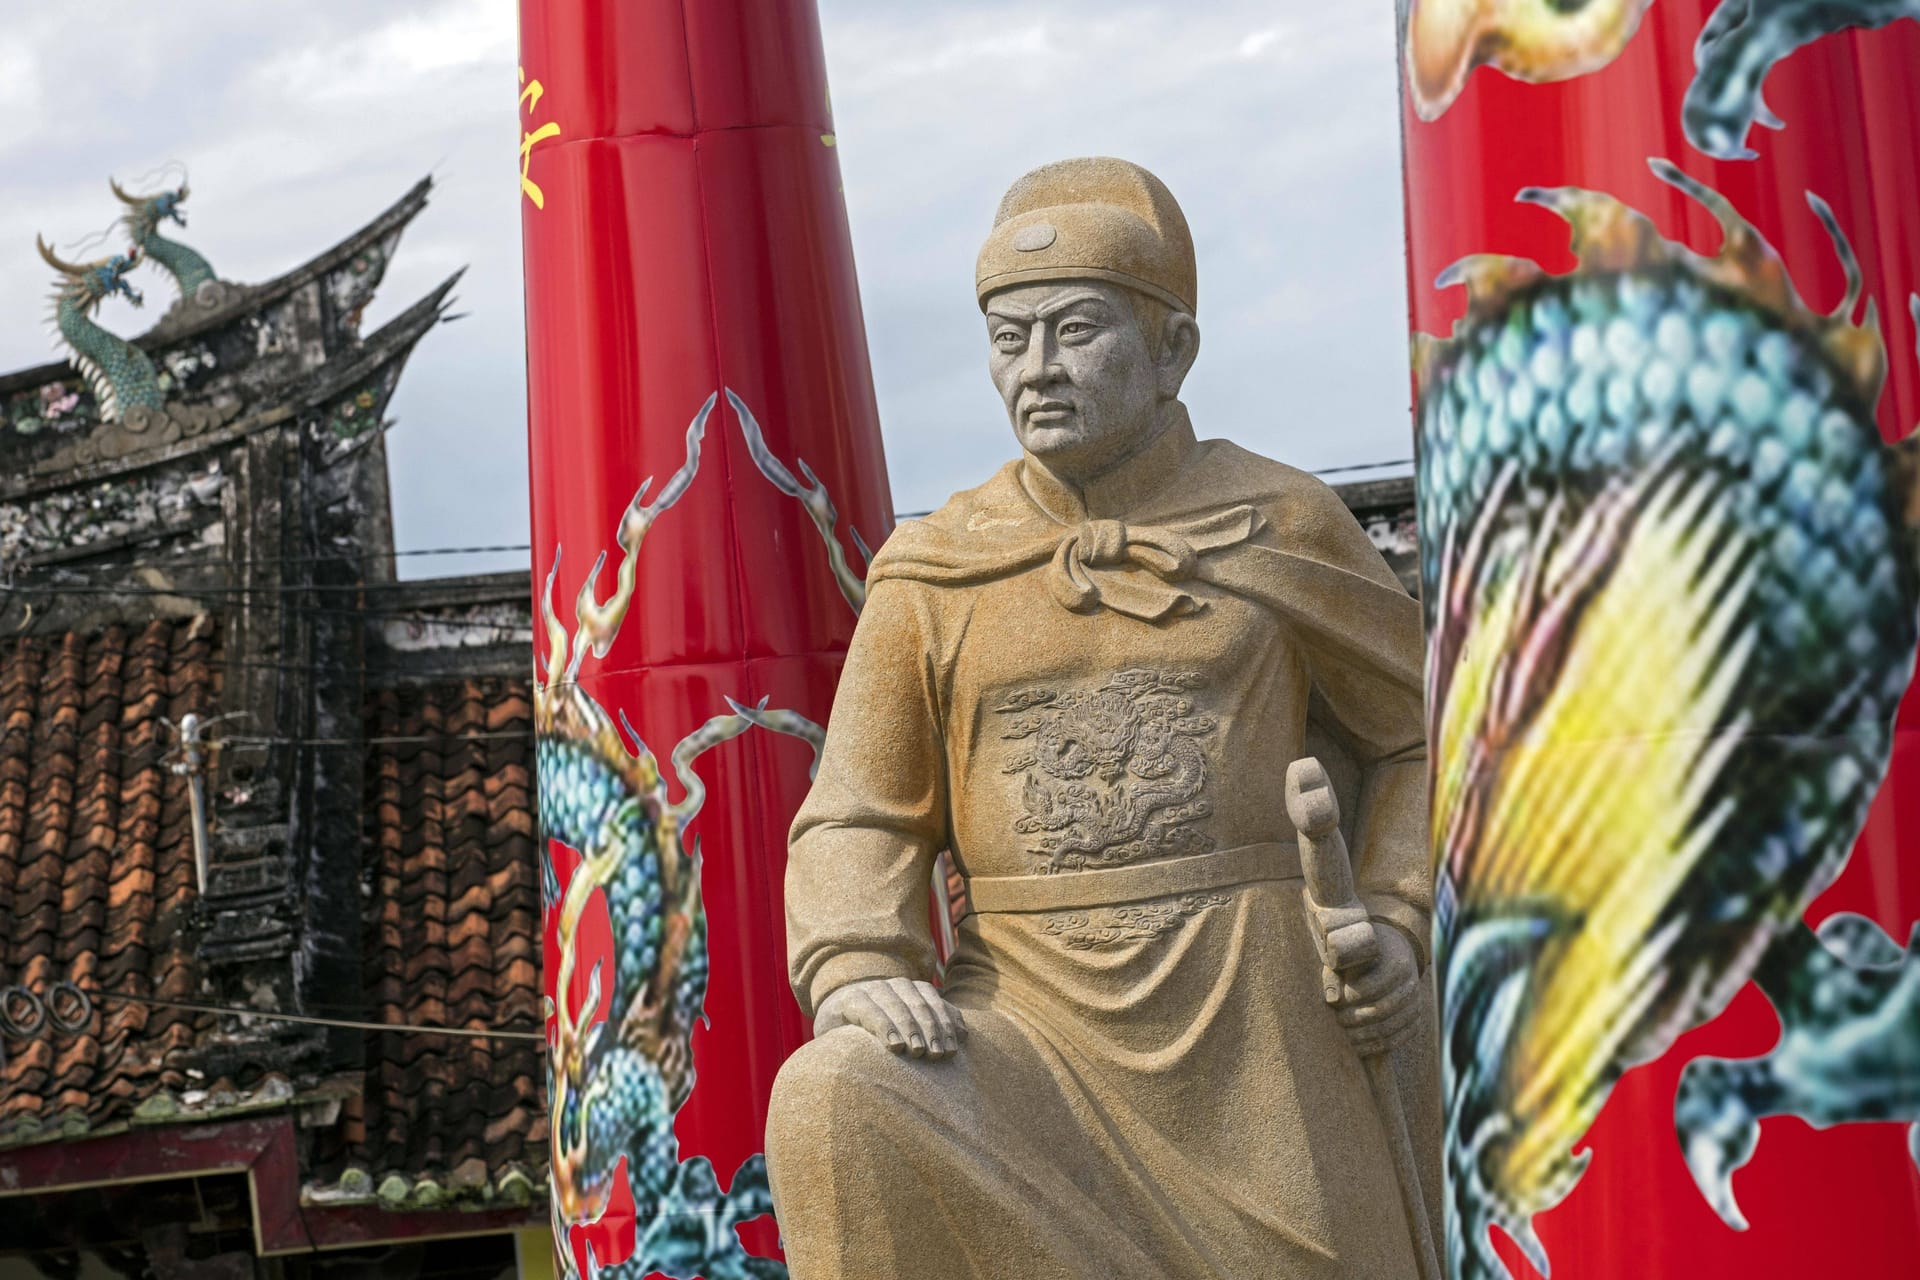 Berühmt im asiatischen Raum: Statue von Zheng He in Indonesien (Archivbild).